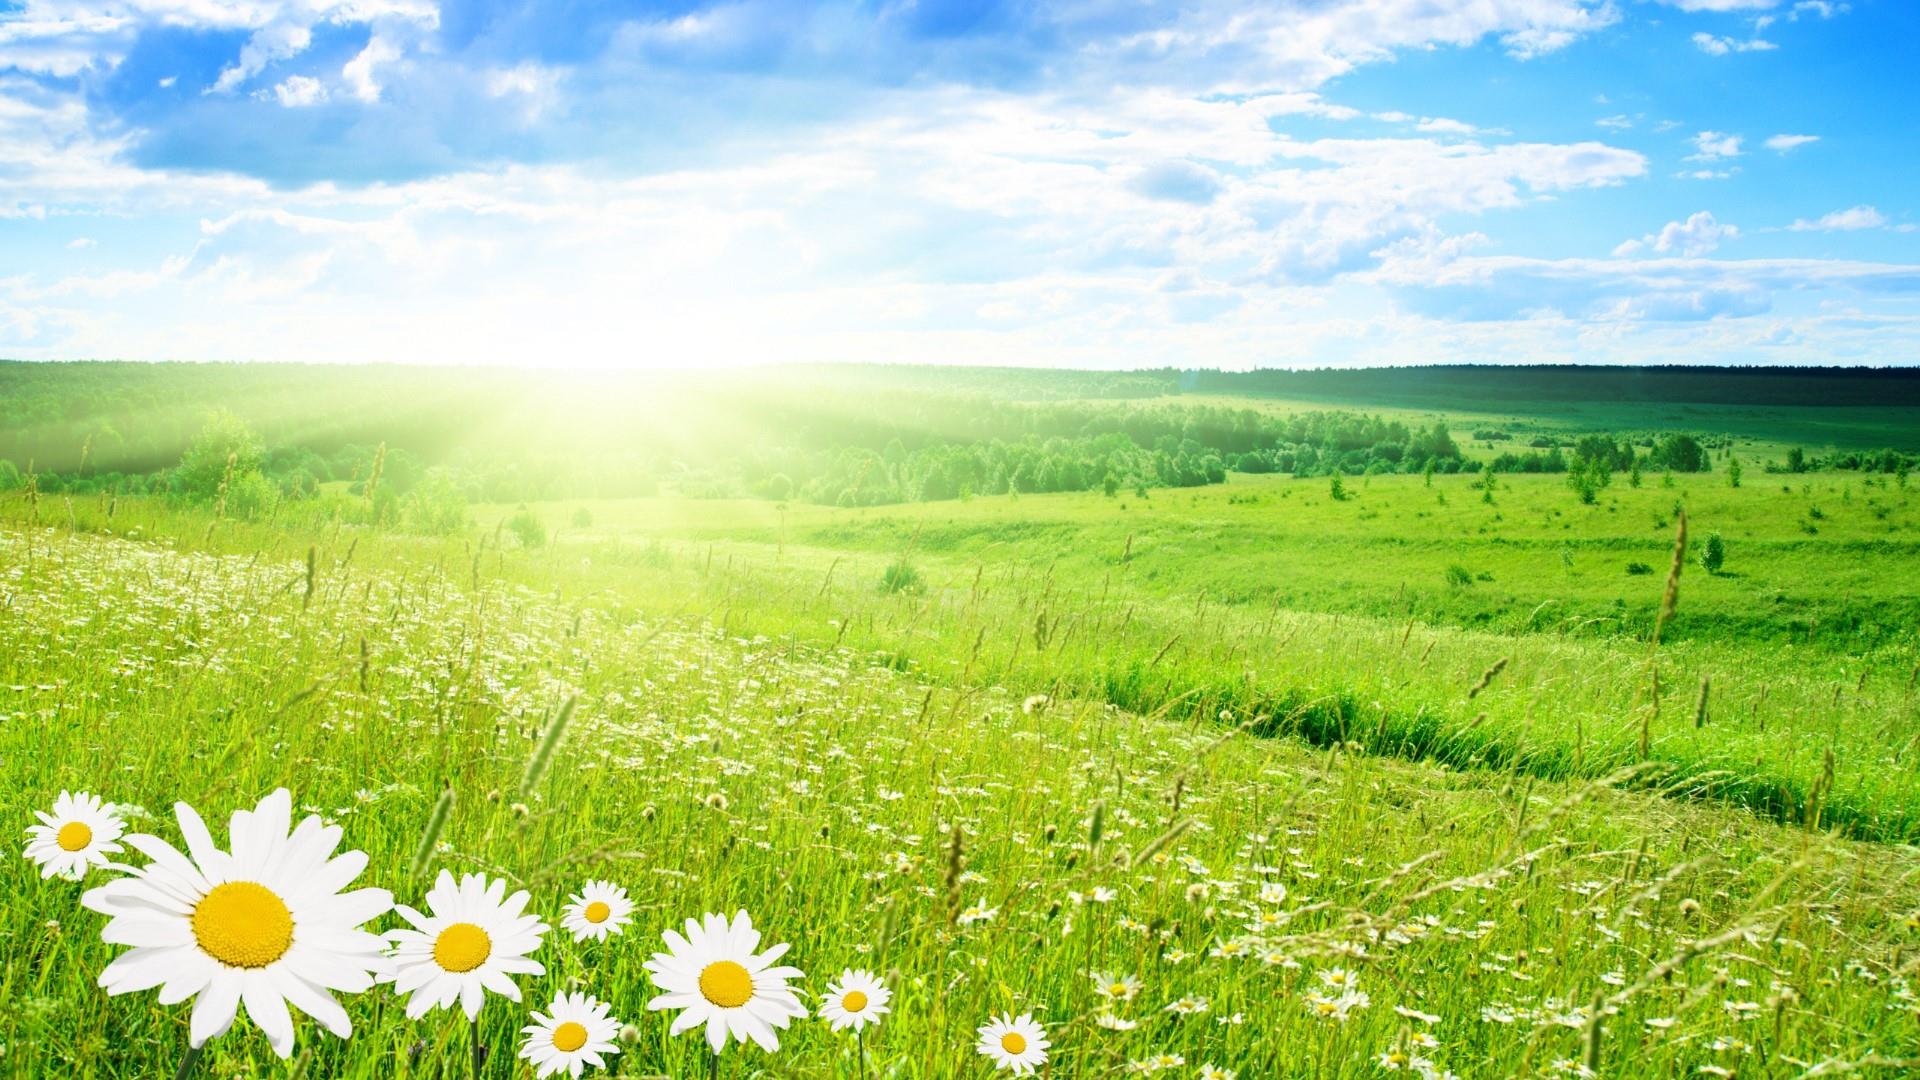 30 Hình ảnh cánh đồng hoa tuyệt đẹp nhất thế giới Full HD - Hà Nội Spirit Of Place 9